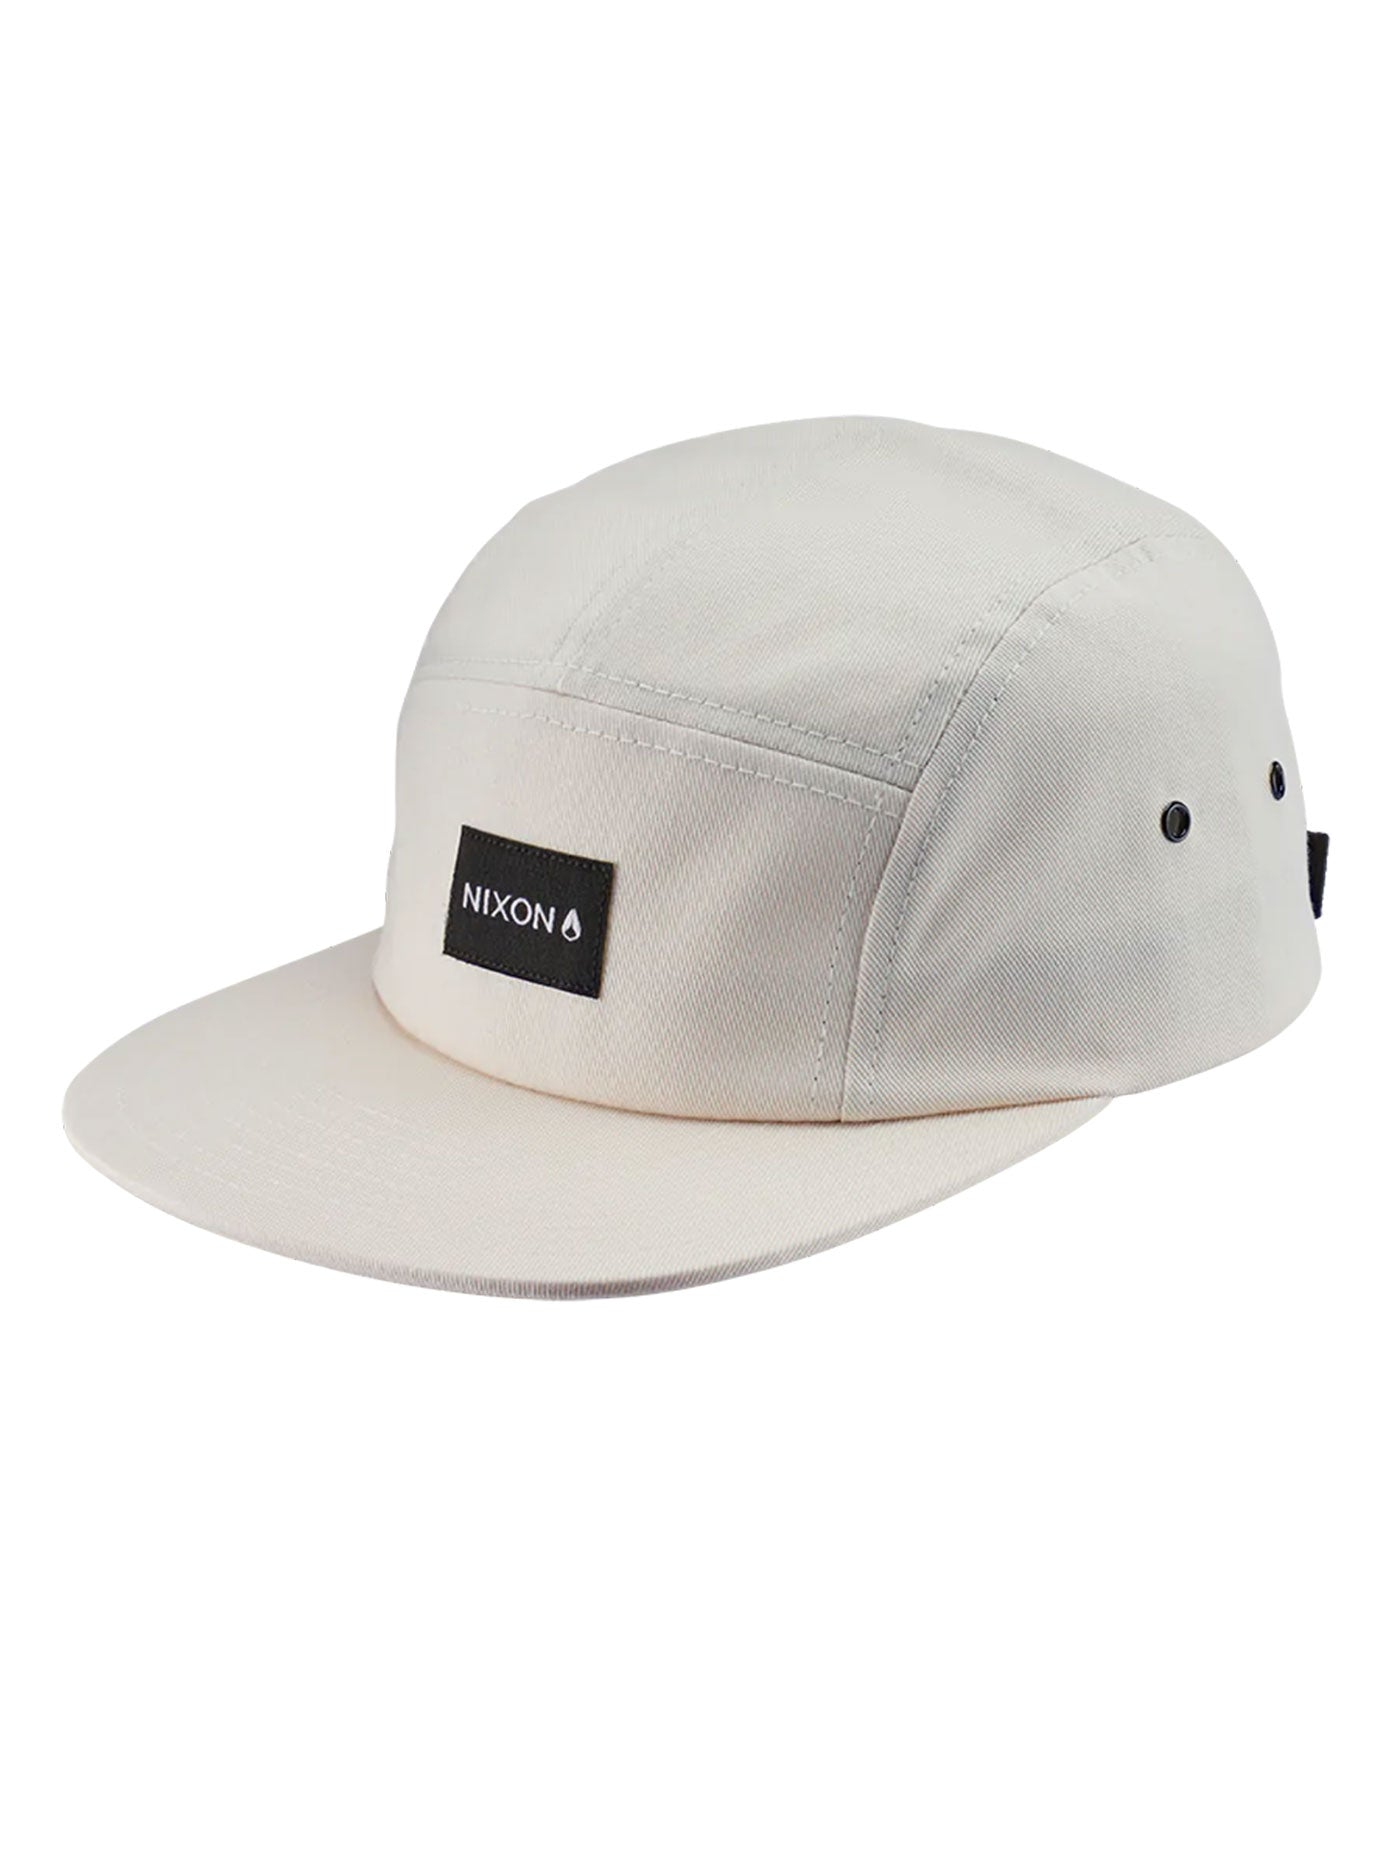 Men's Hats - Shop Headwear Online | EMPIRE